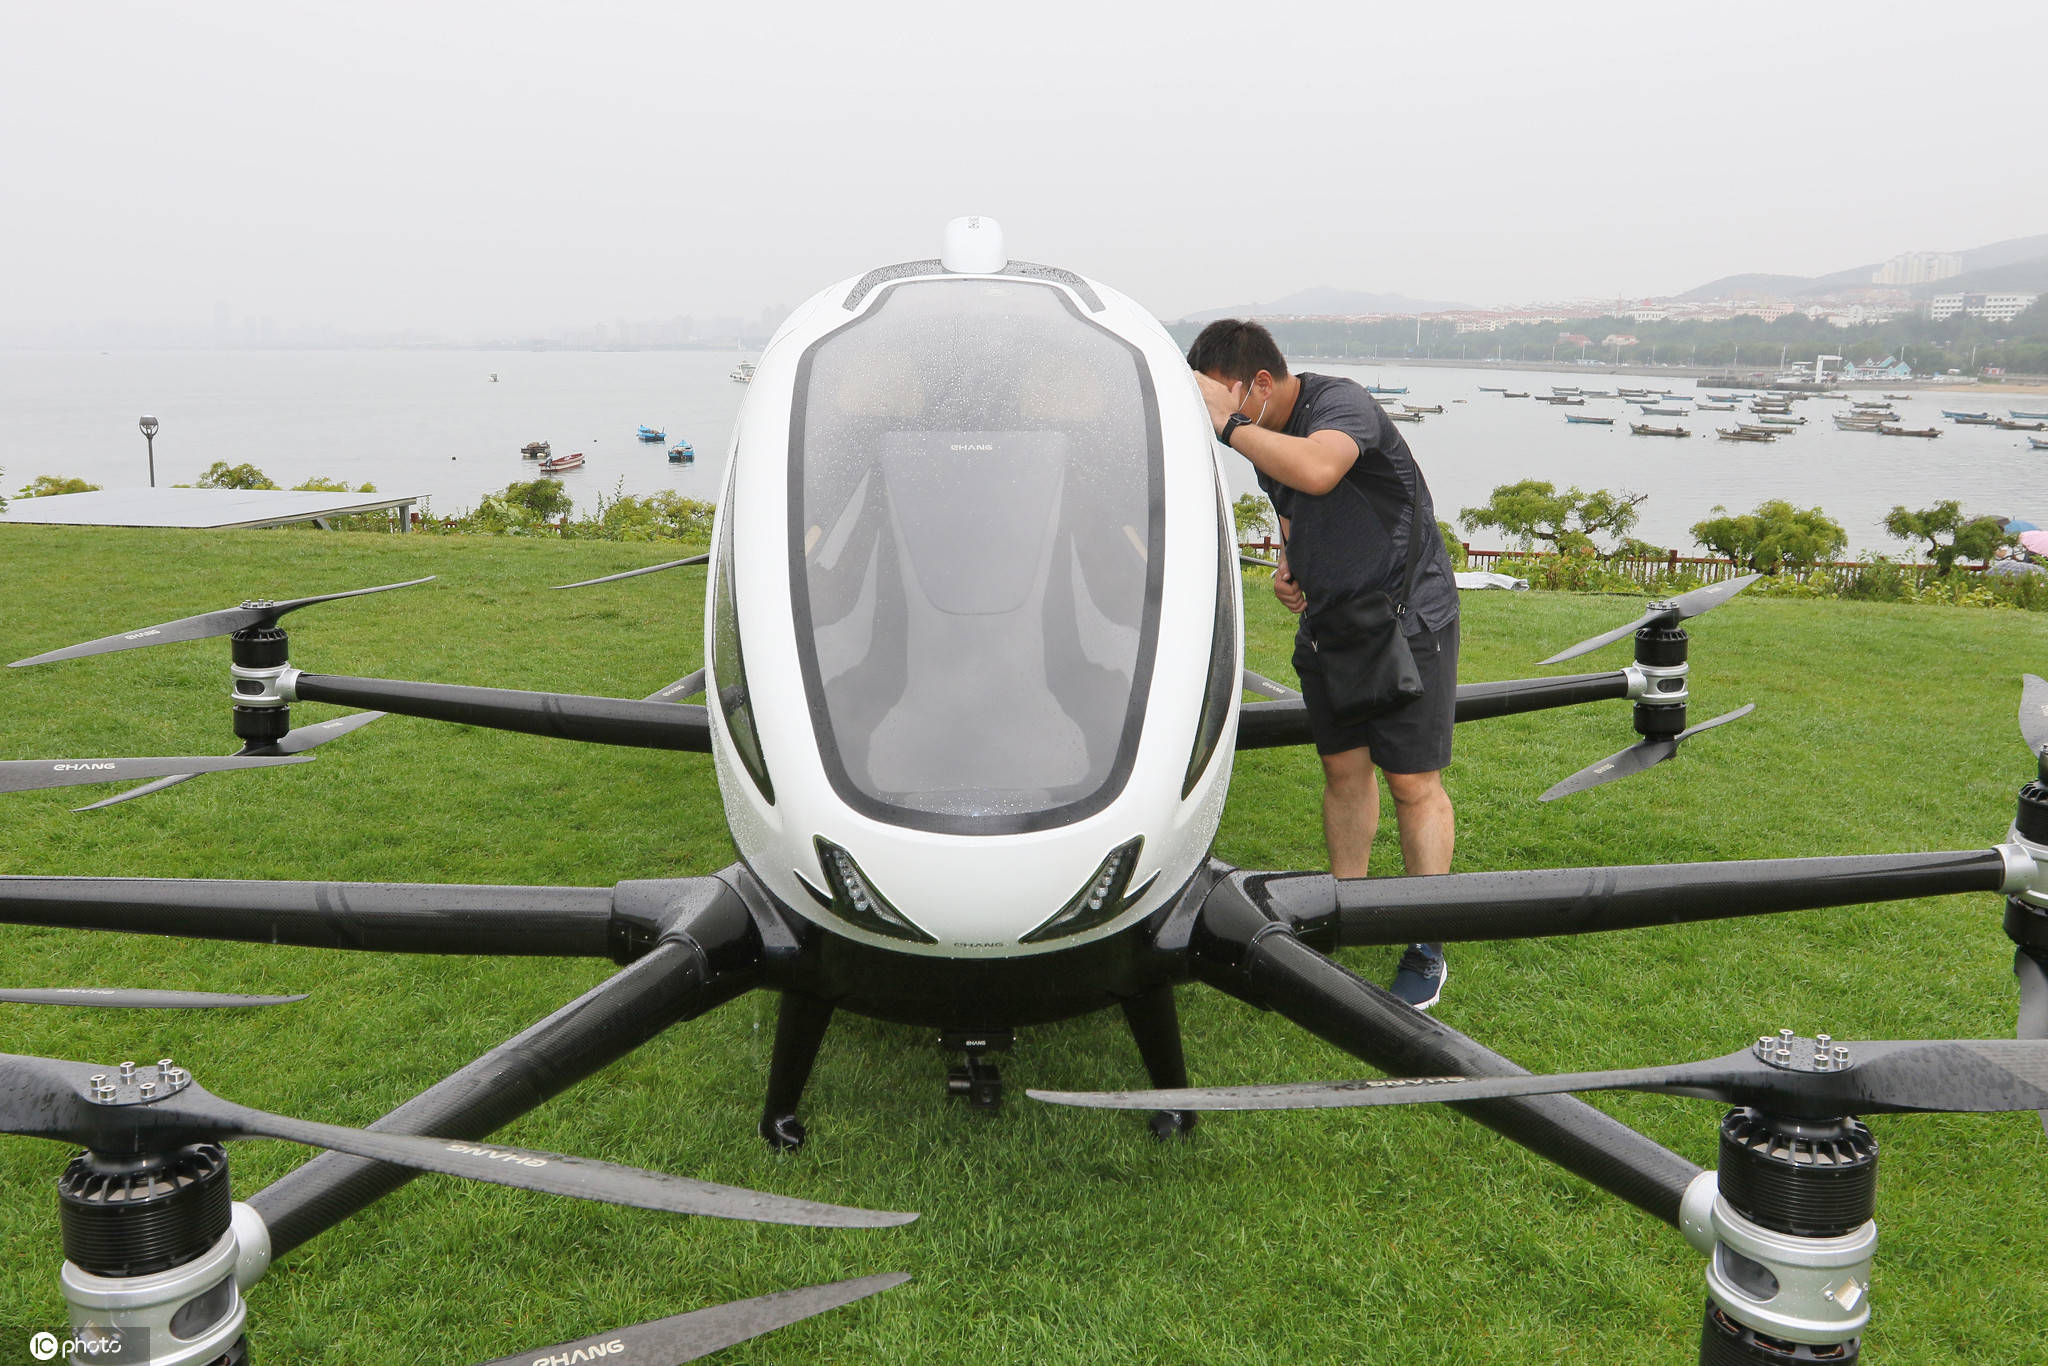 亿航aav216自动驾驶电动飞行器成功进行载人试飞